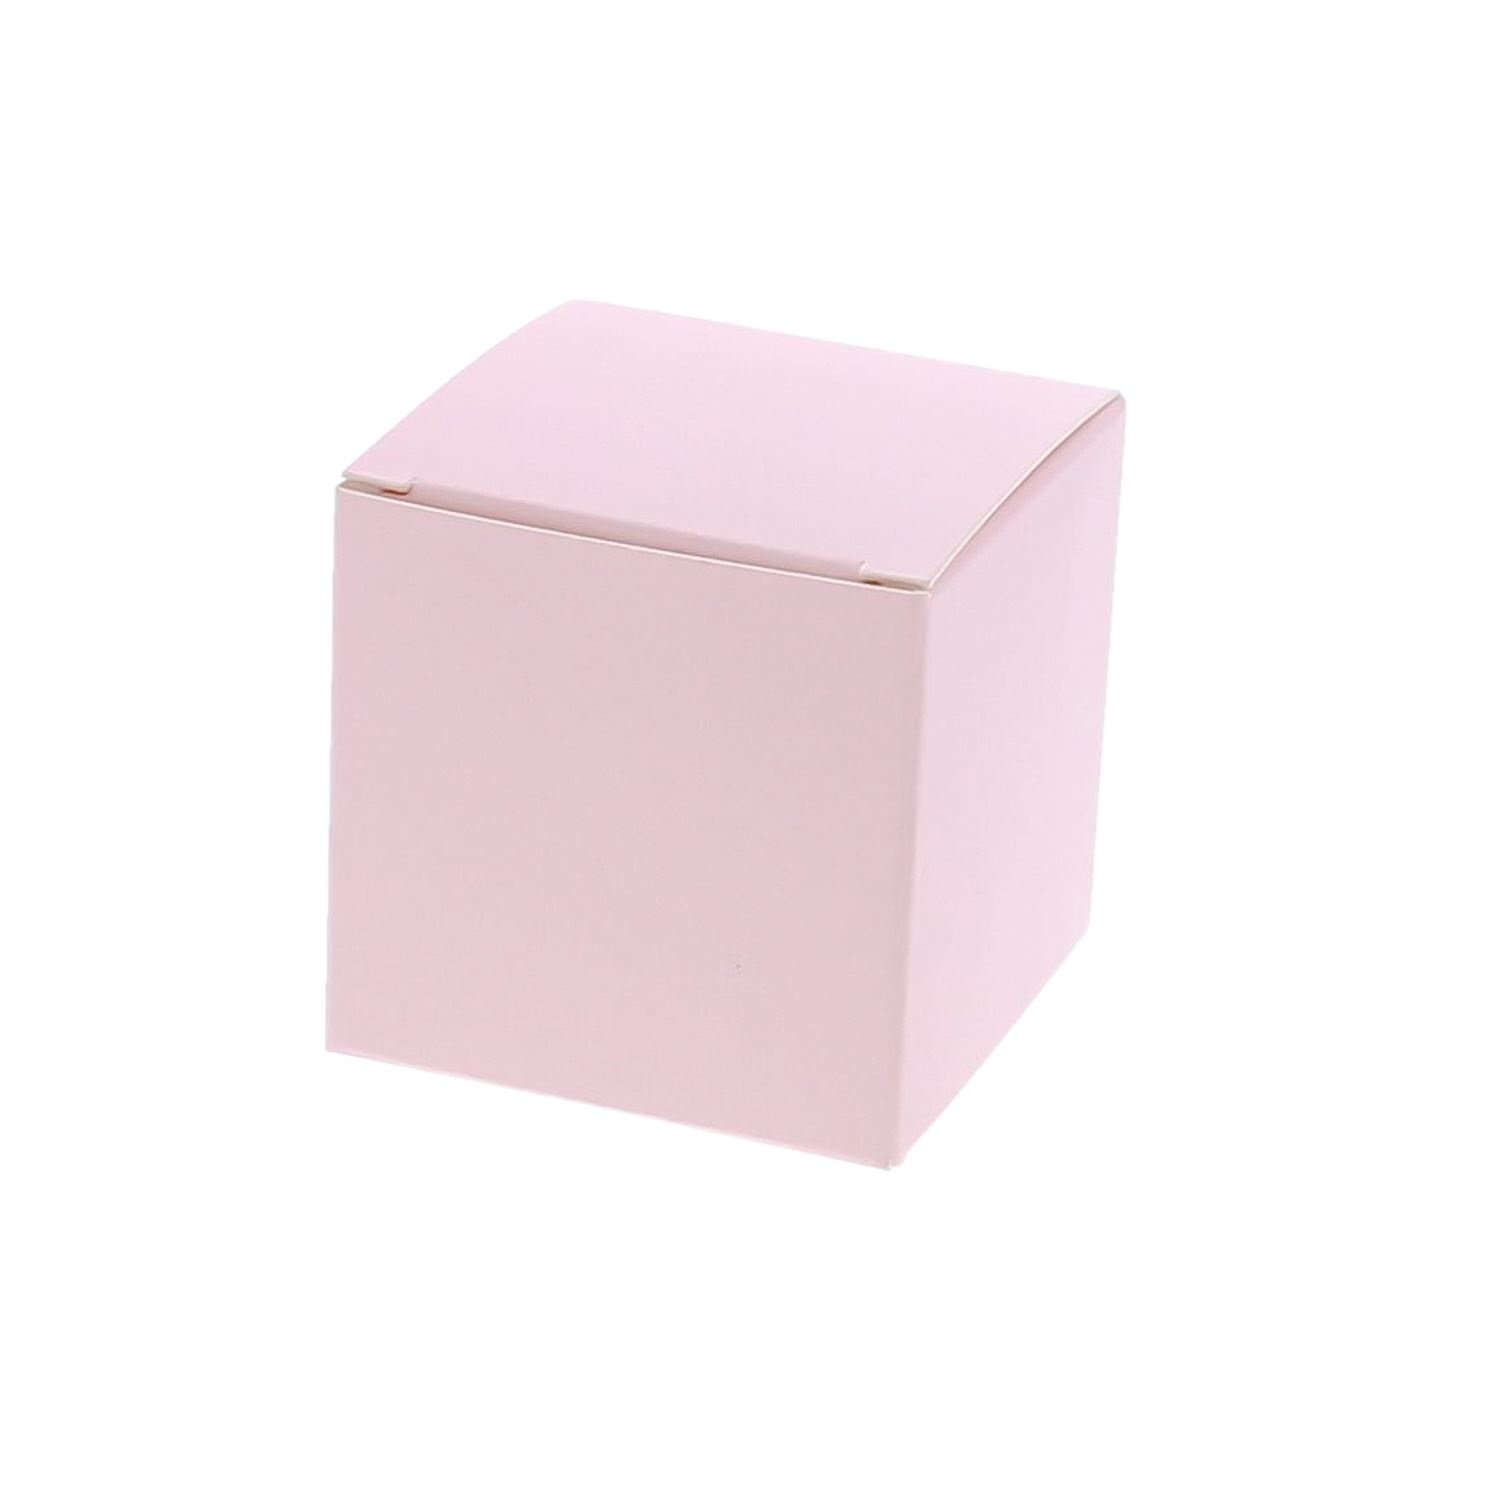 Cube box Light pink matt - 50*50*50mm -100 pieces